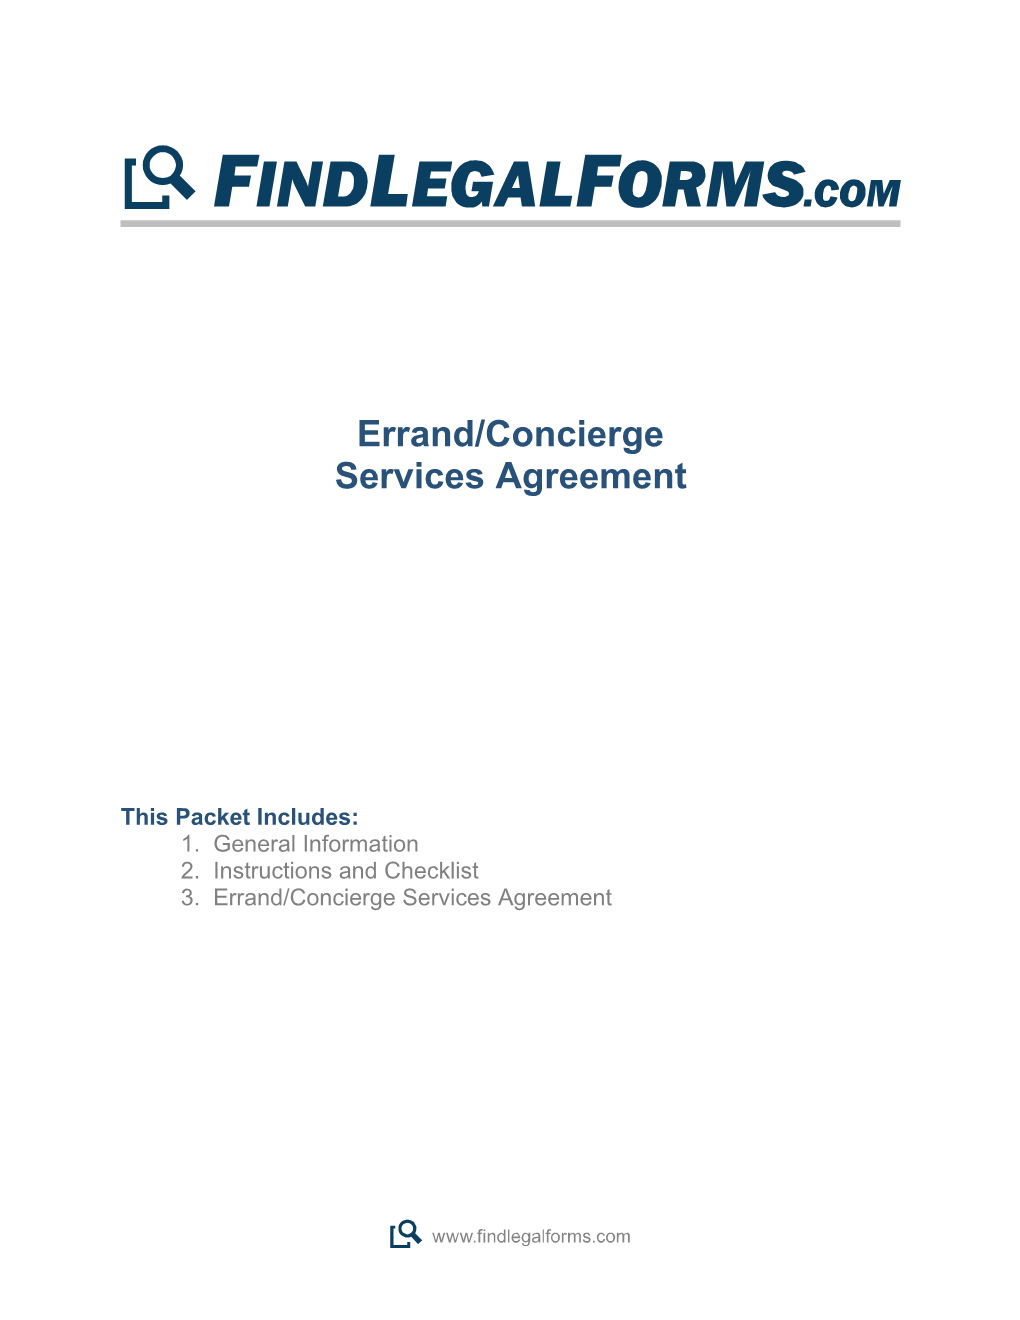 Errand Concierge Services Agreement